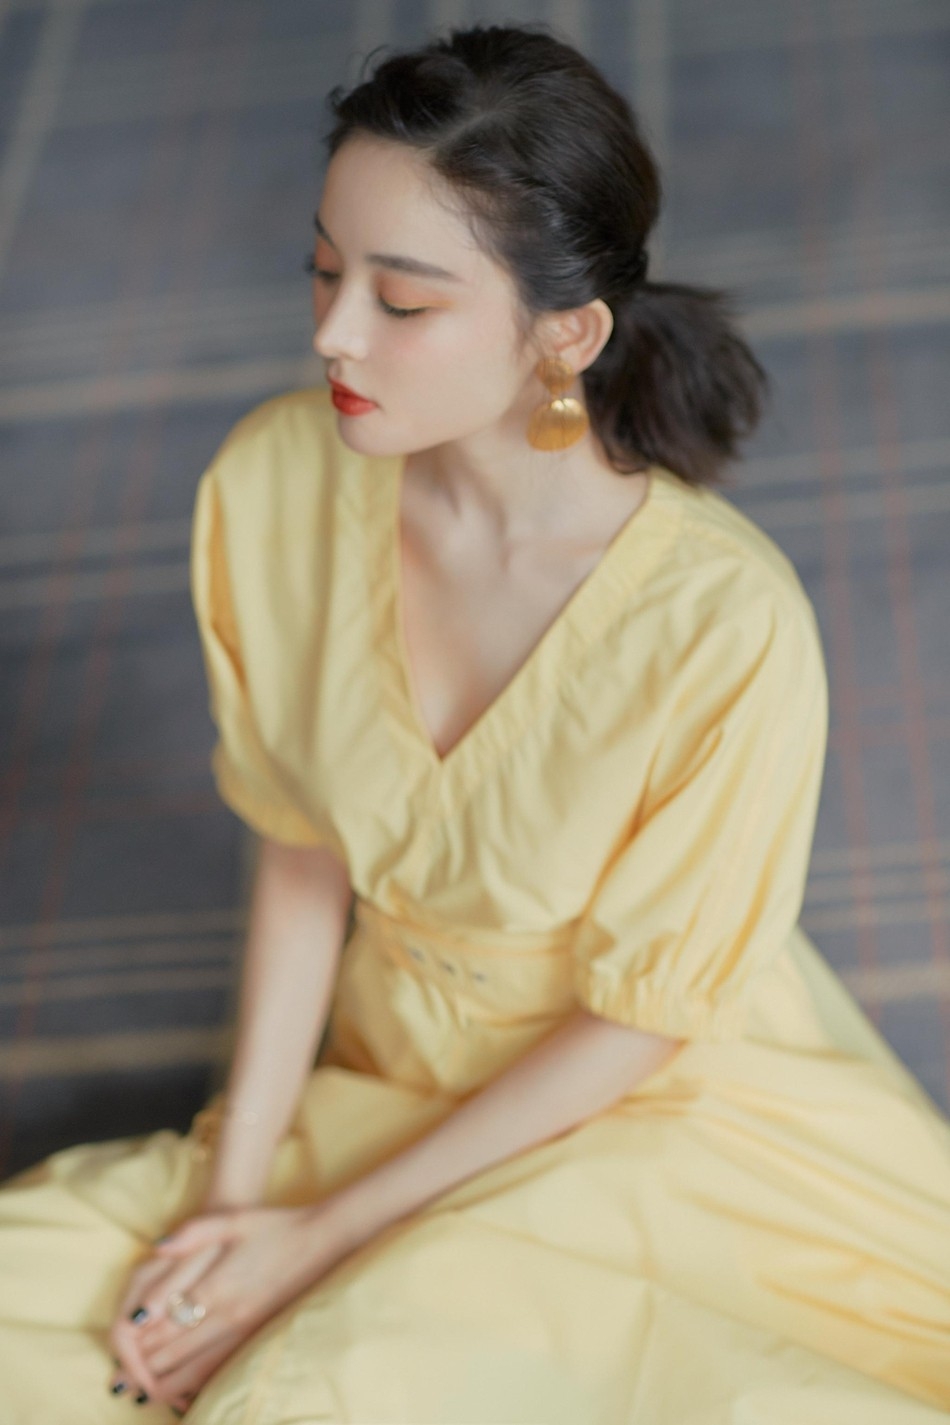 甜美成熟少女娜扎酥胸美腿黄色短裙小清新写真图片(1)